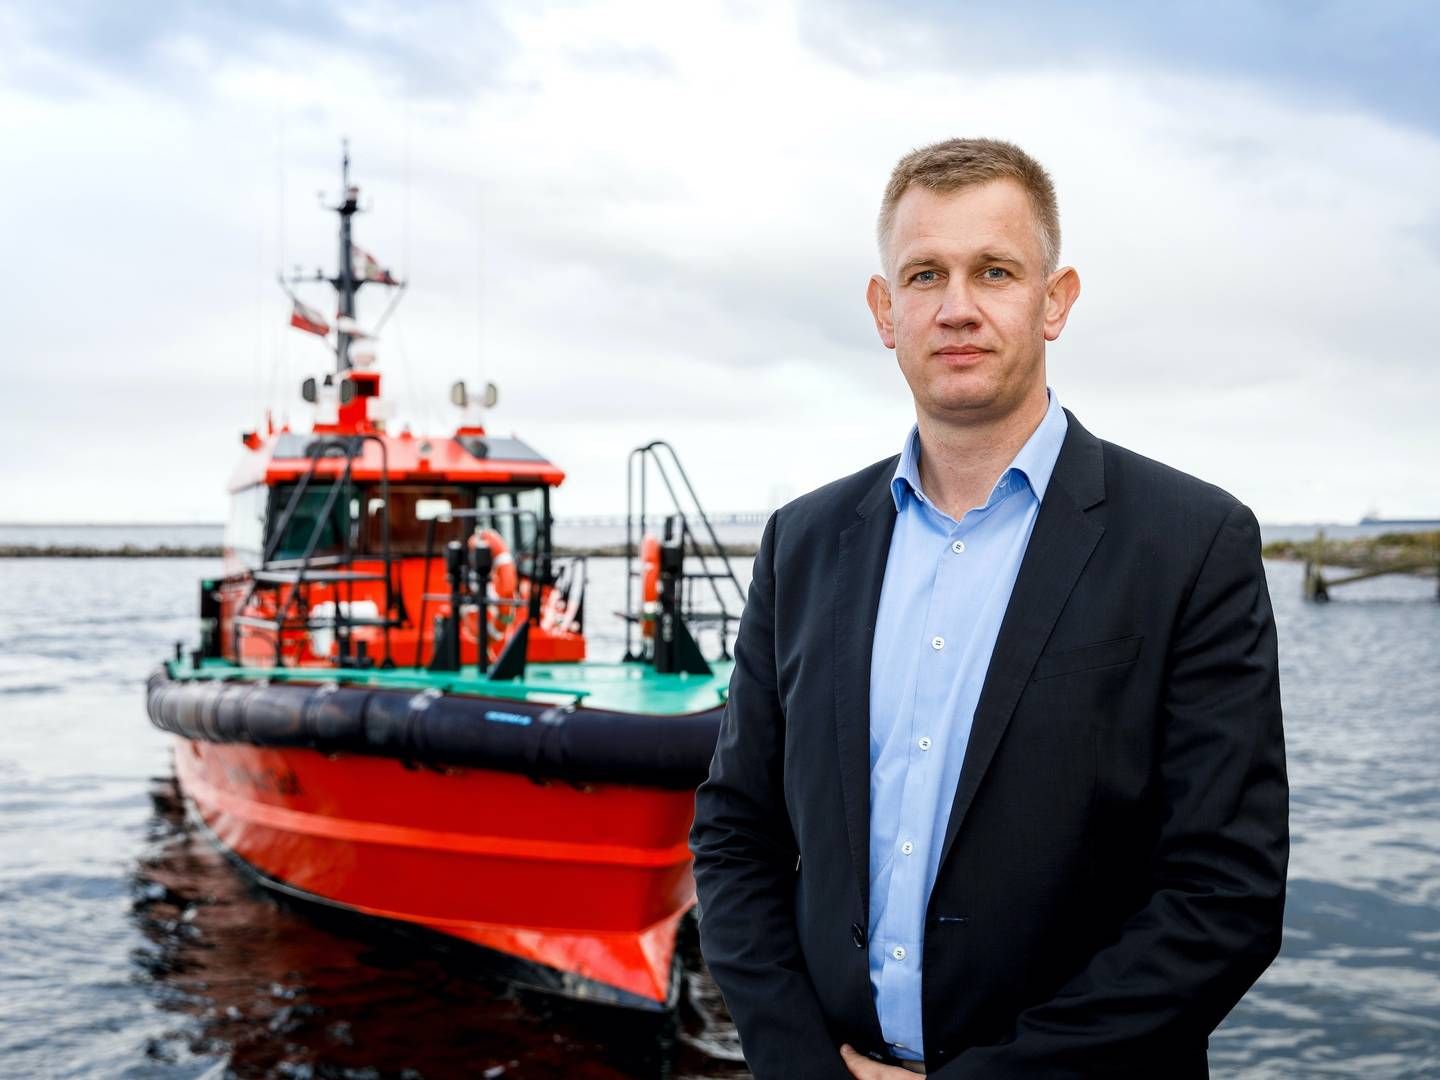 (ARKIV) En ny undtagelse i EU's sanktionskamp kan være en fordel af danske lodsningsselskaber som Danpilot, vurderer adm. direktør Erik Merkes Nielsen. | Foto: Pr-foto